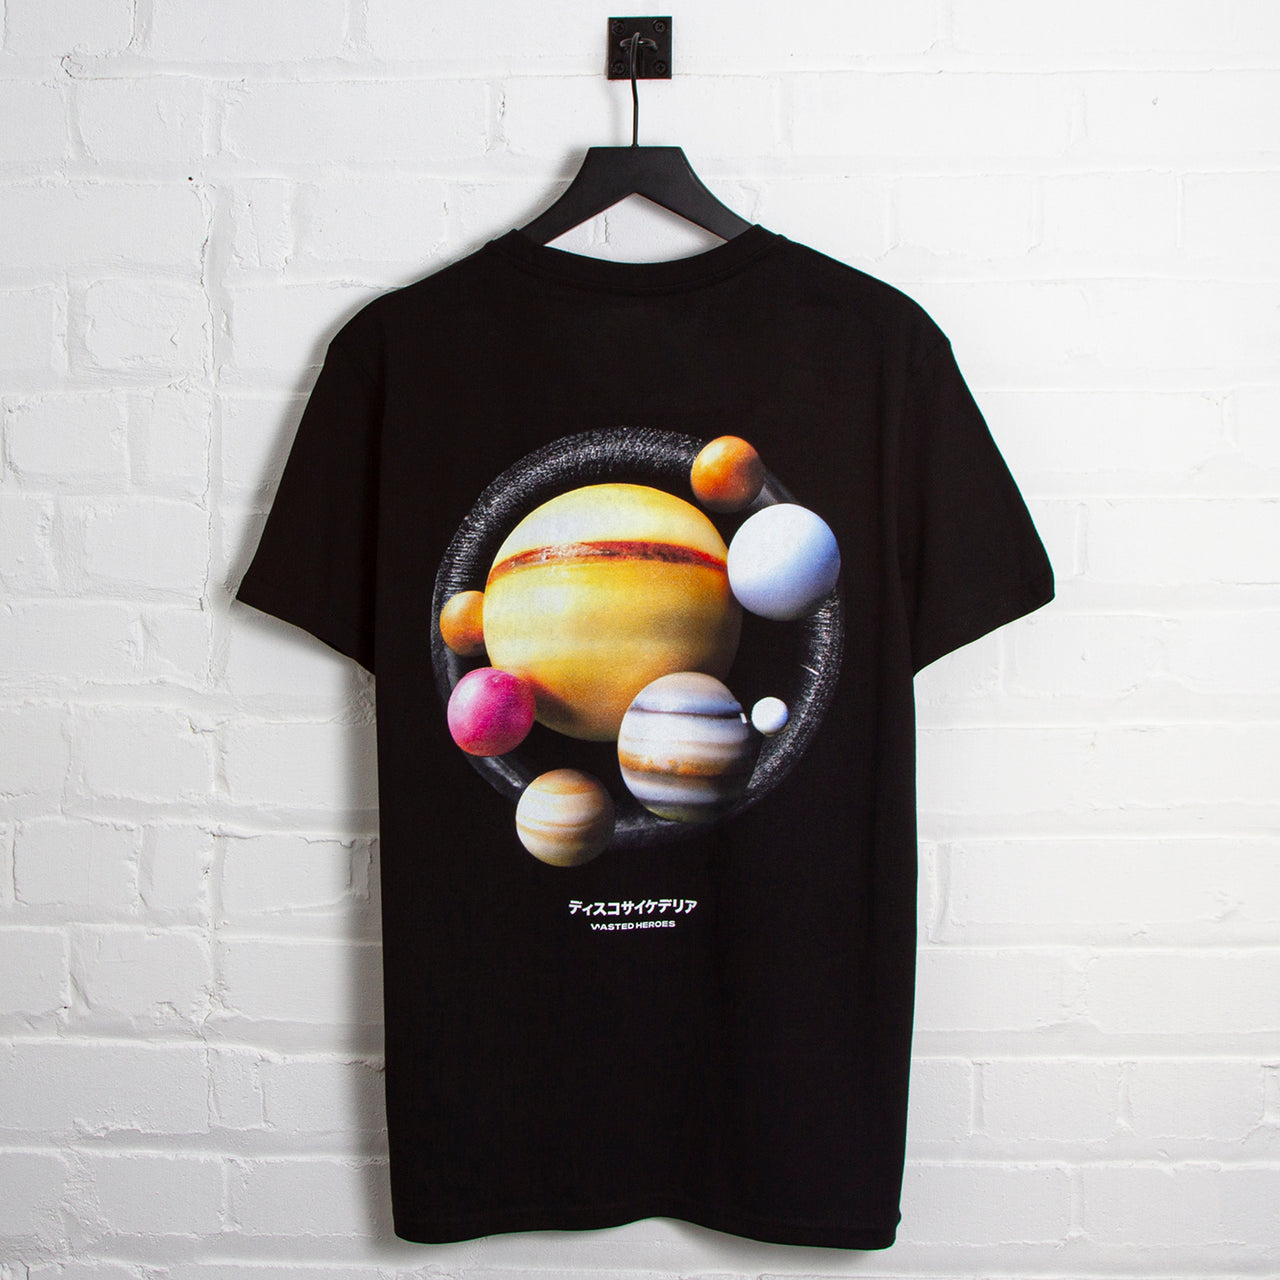 Orbital 005 Back Print - Tshirt - Black